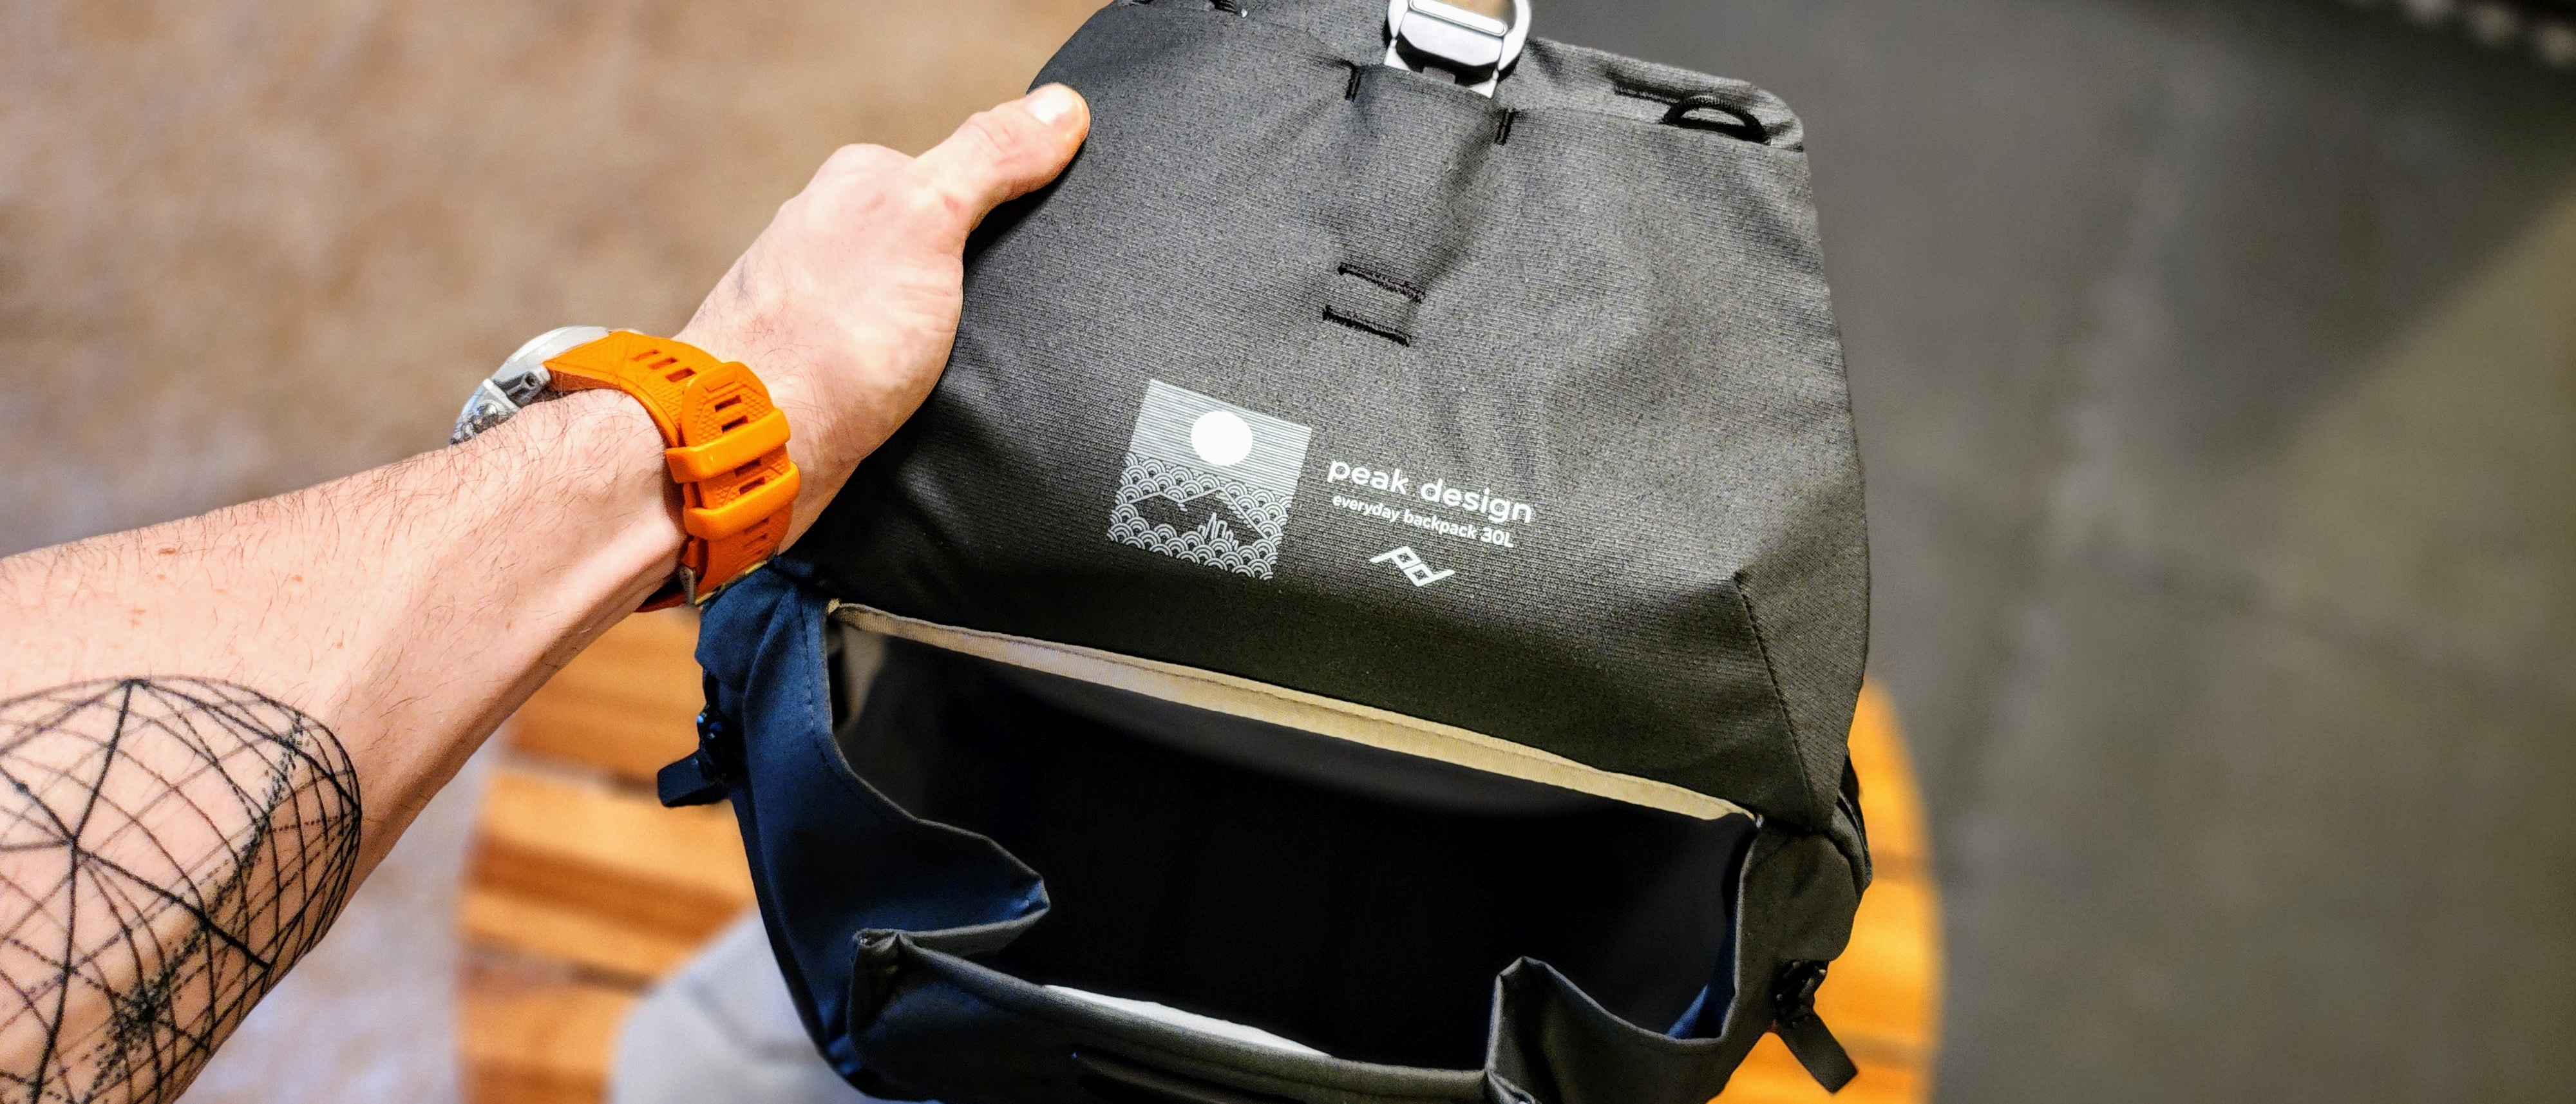 Peak Design Everyday Backpack V2 30L review